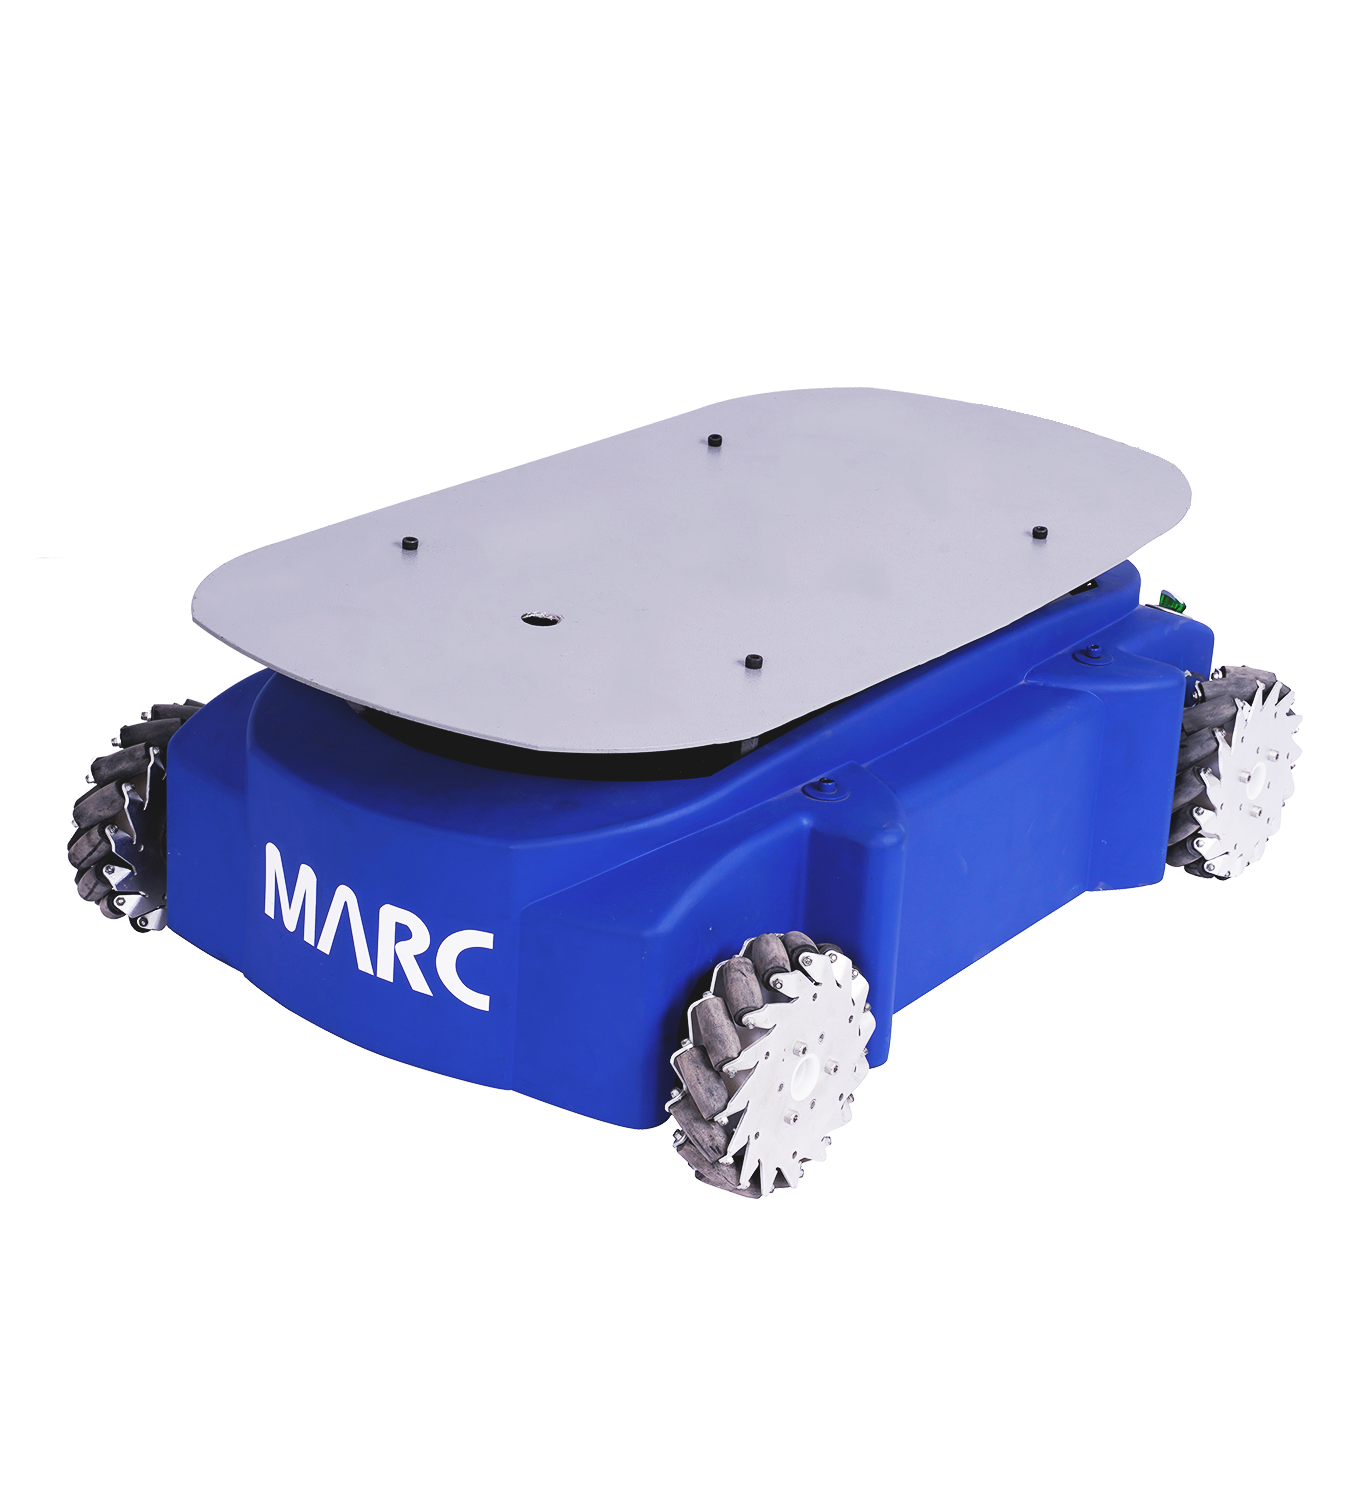 MARC - Autonomous Mobile Robot